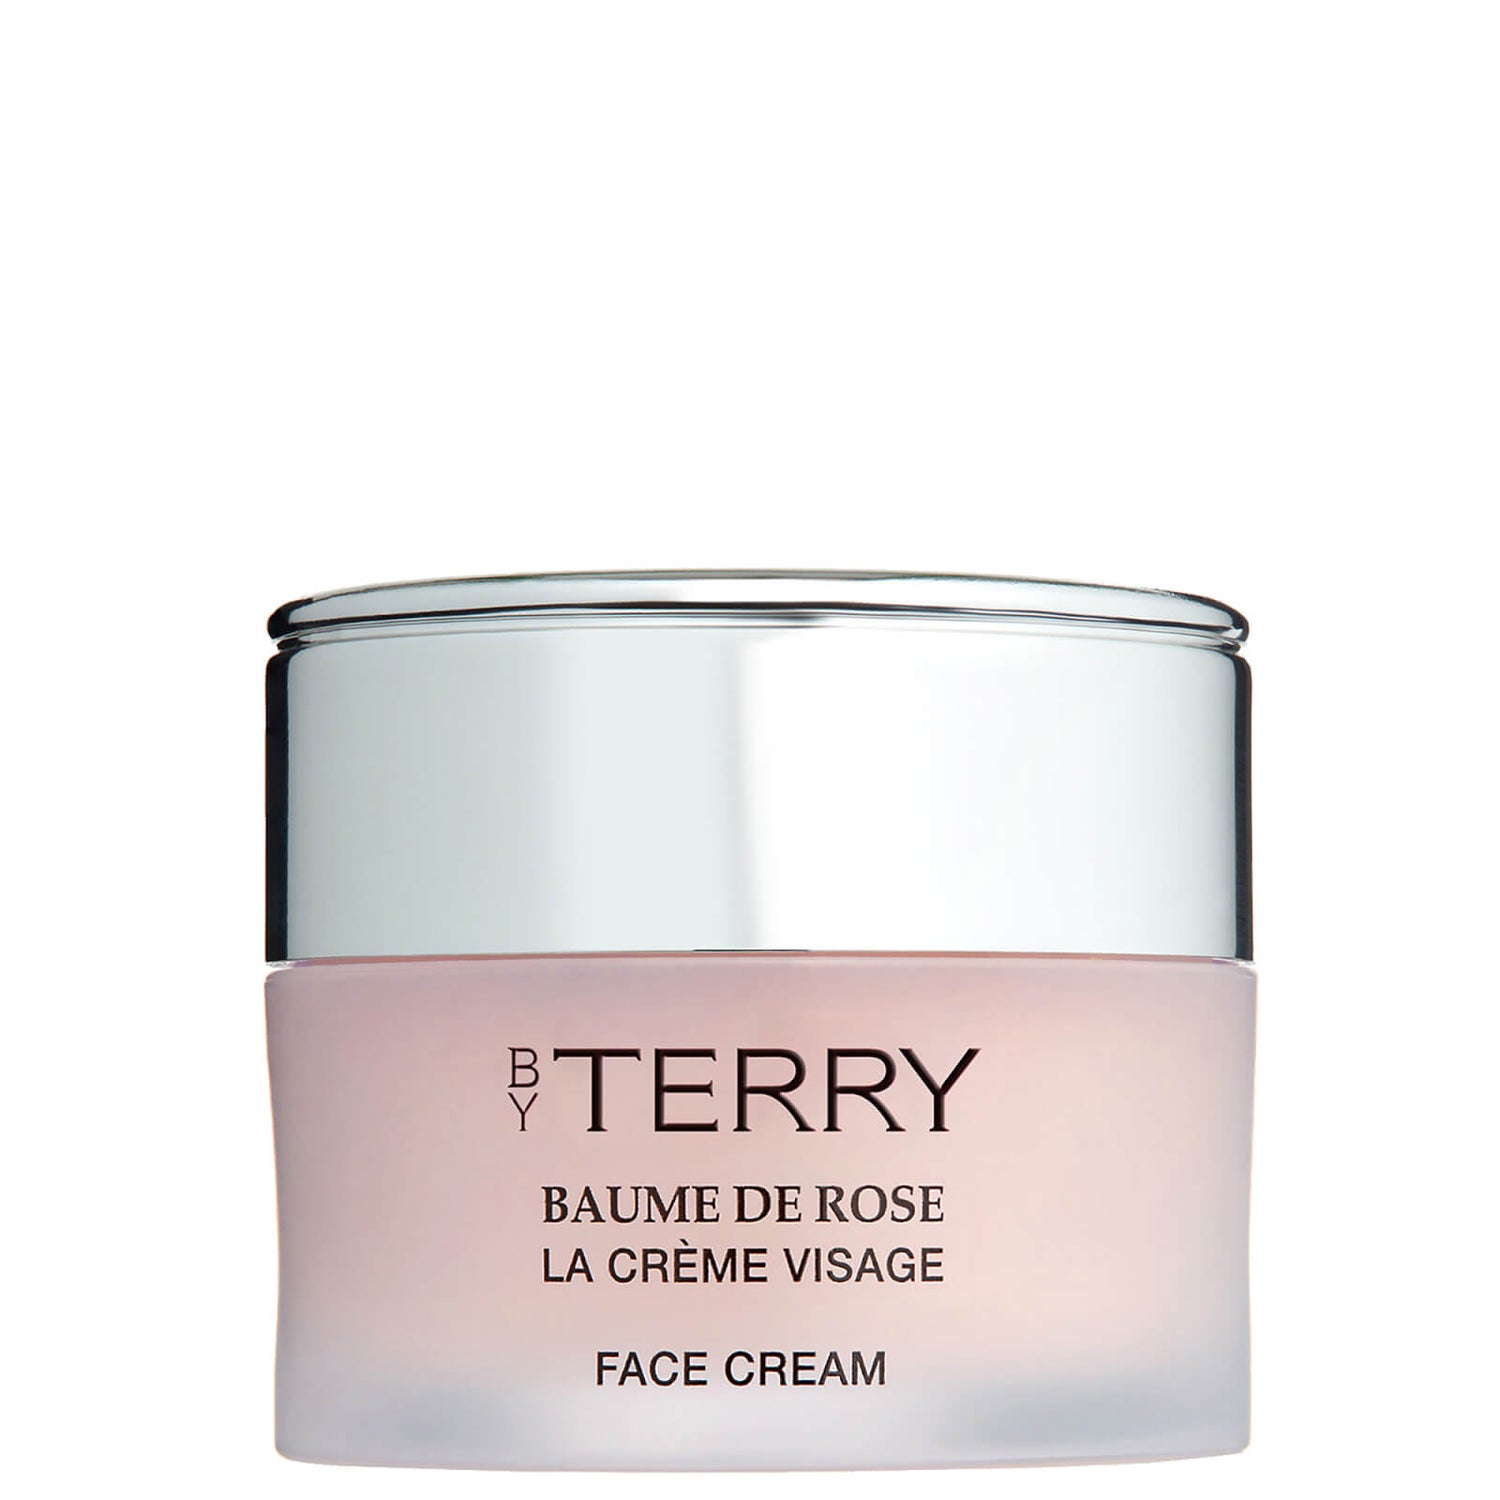 Crema facial Baume de Rose La Creme Visage de By Terry 50 ml